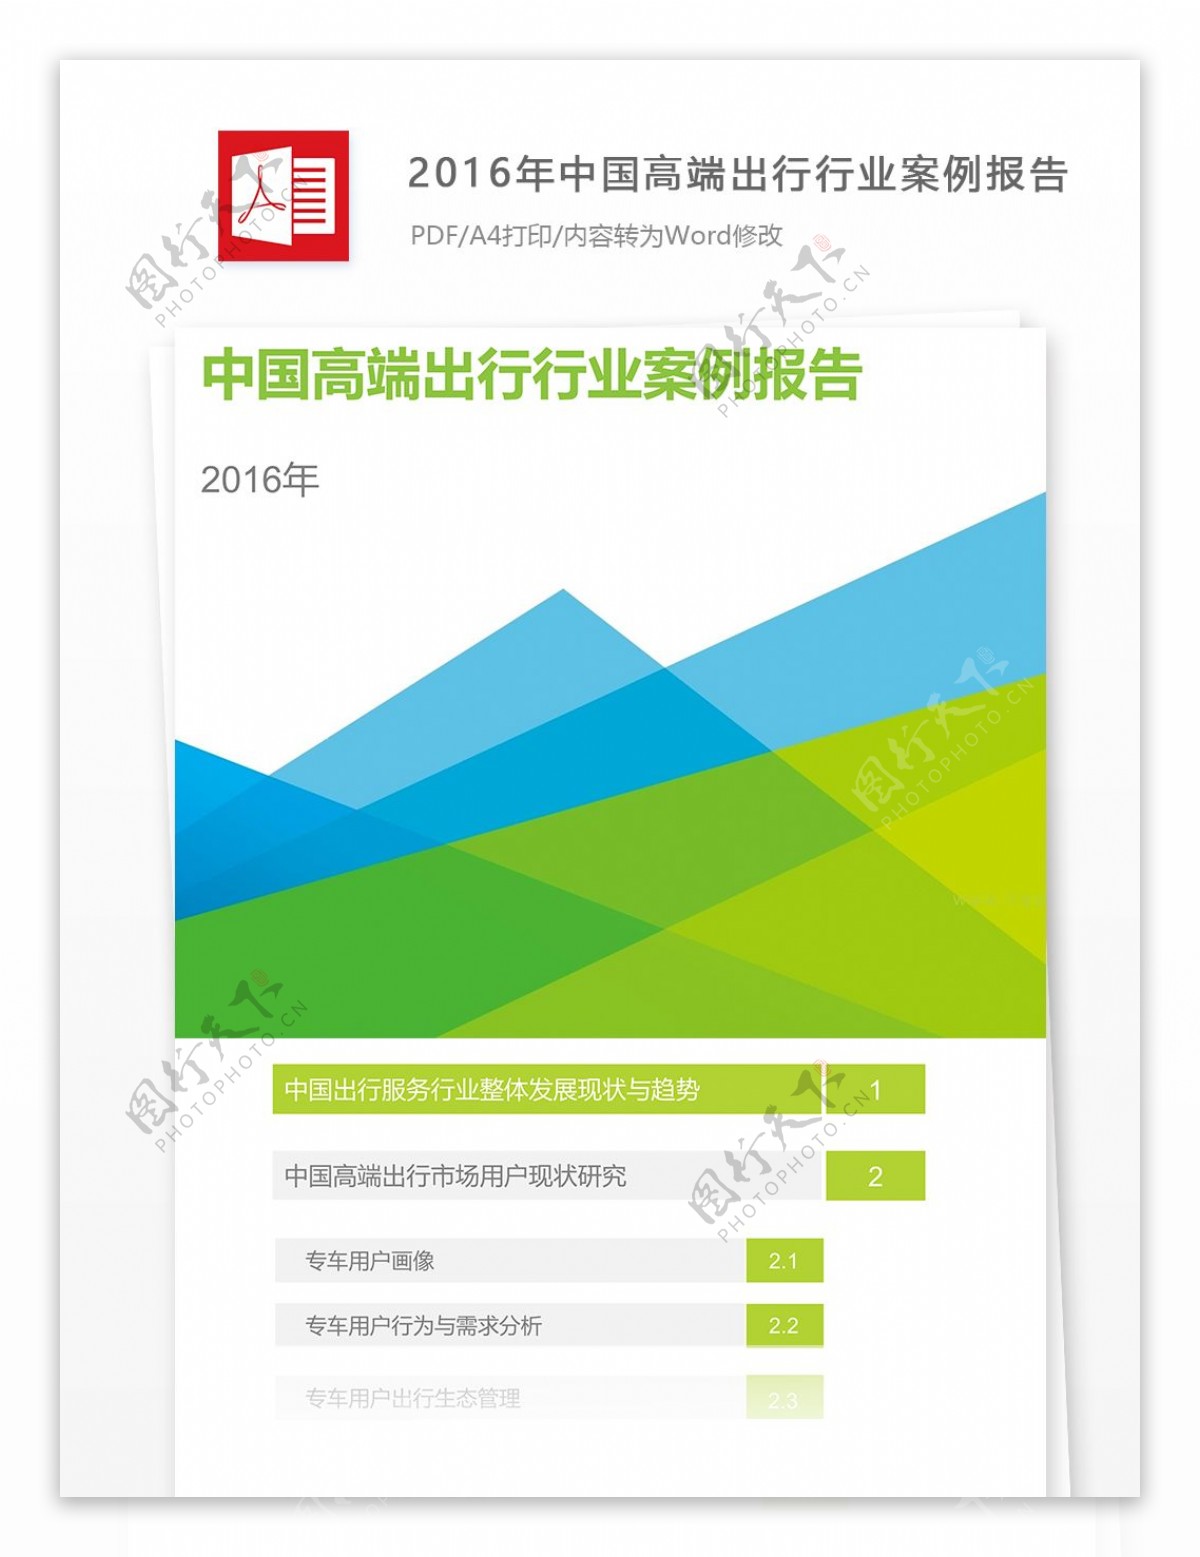 2016年中国高端出行行业案例报告